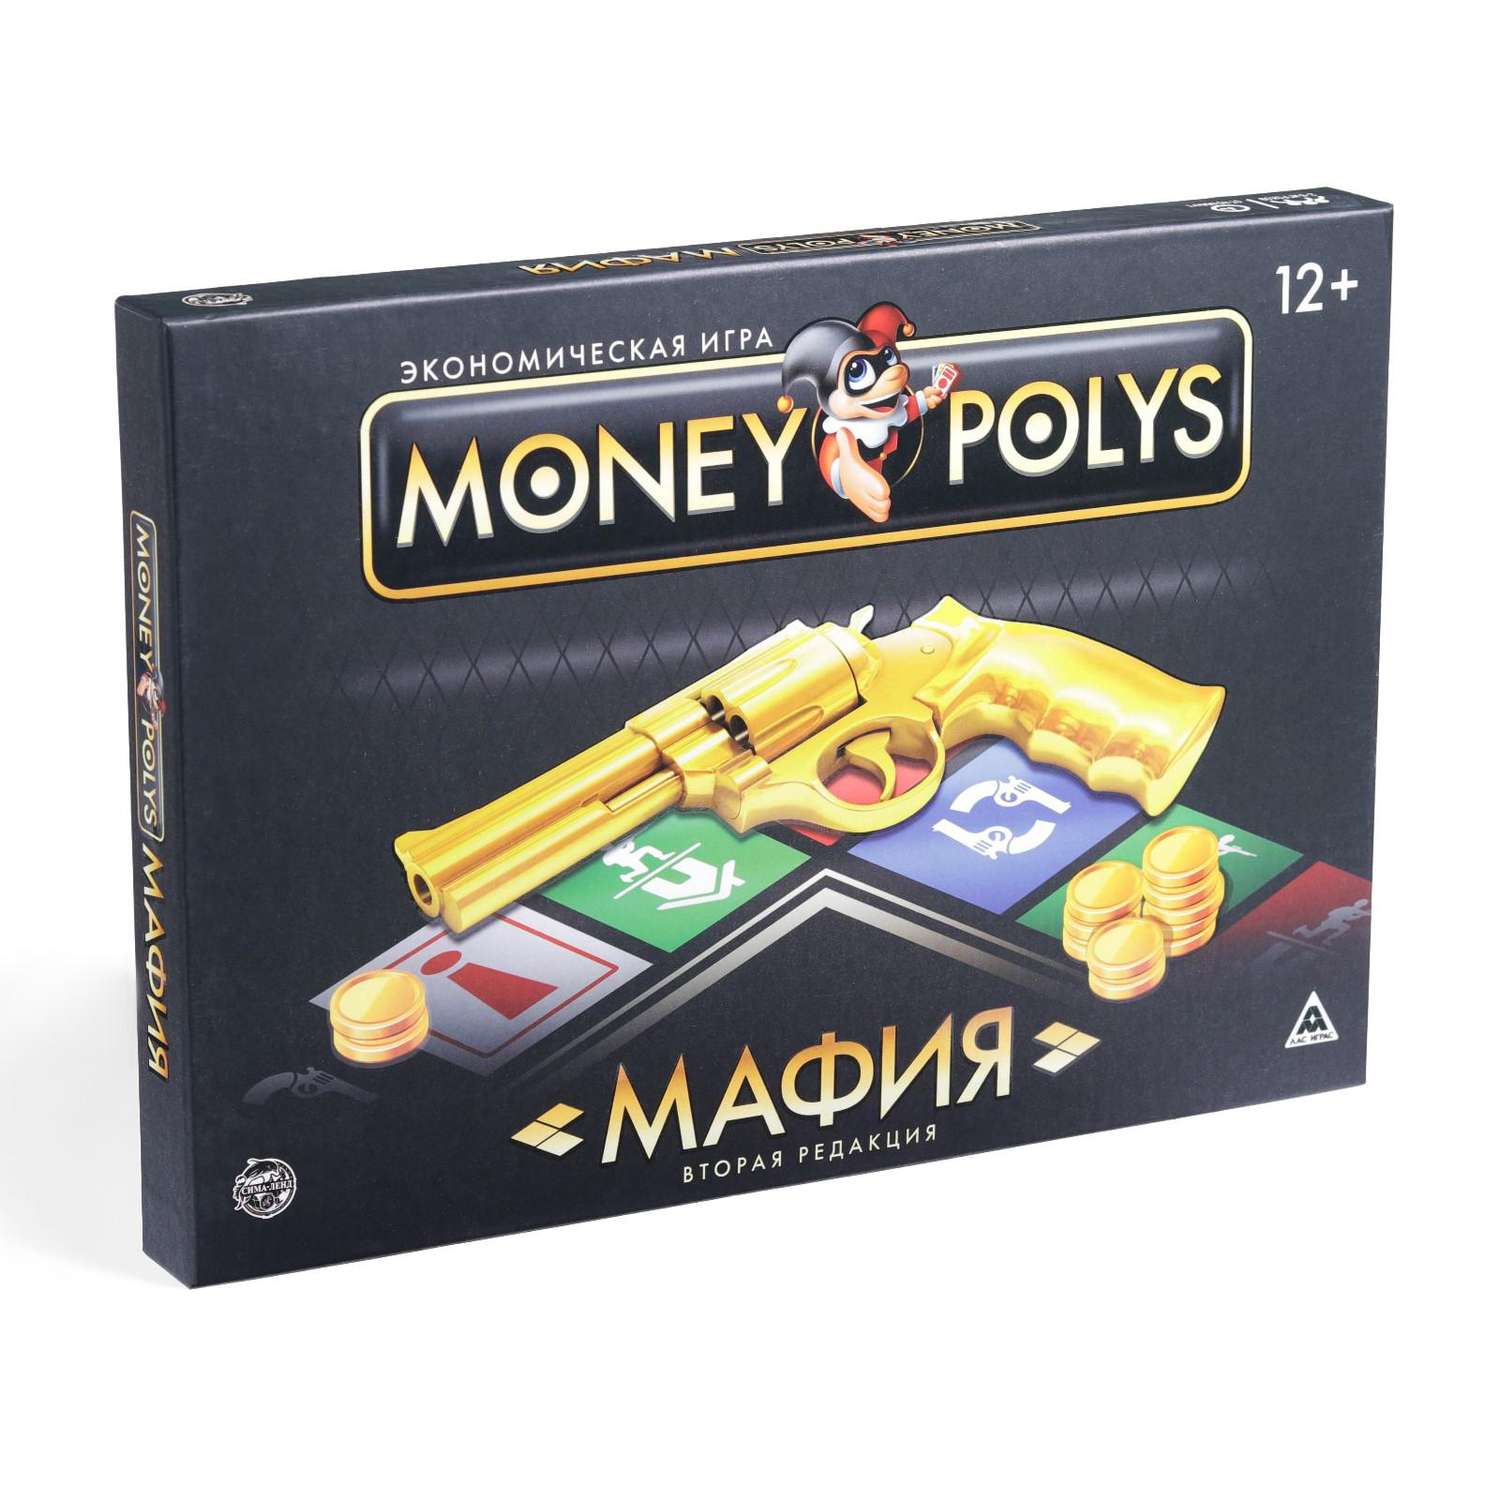 Экономическая игра Лас Играс Money Polys Мафия - фото 1